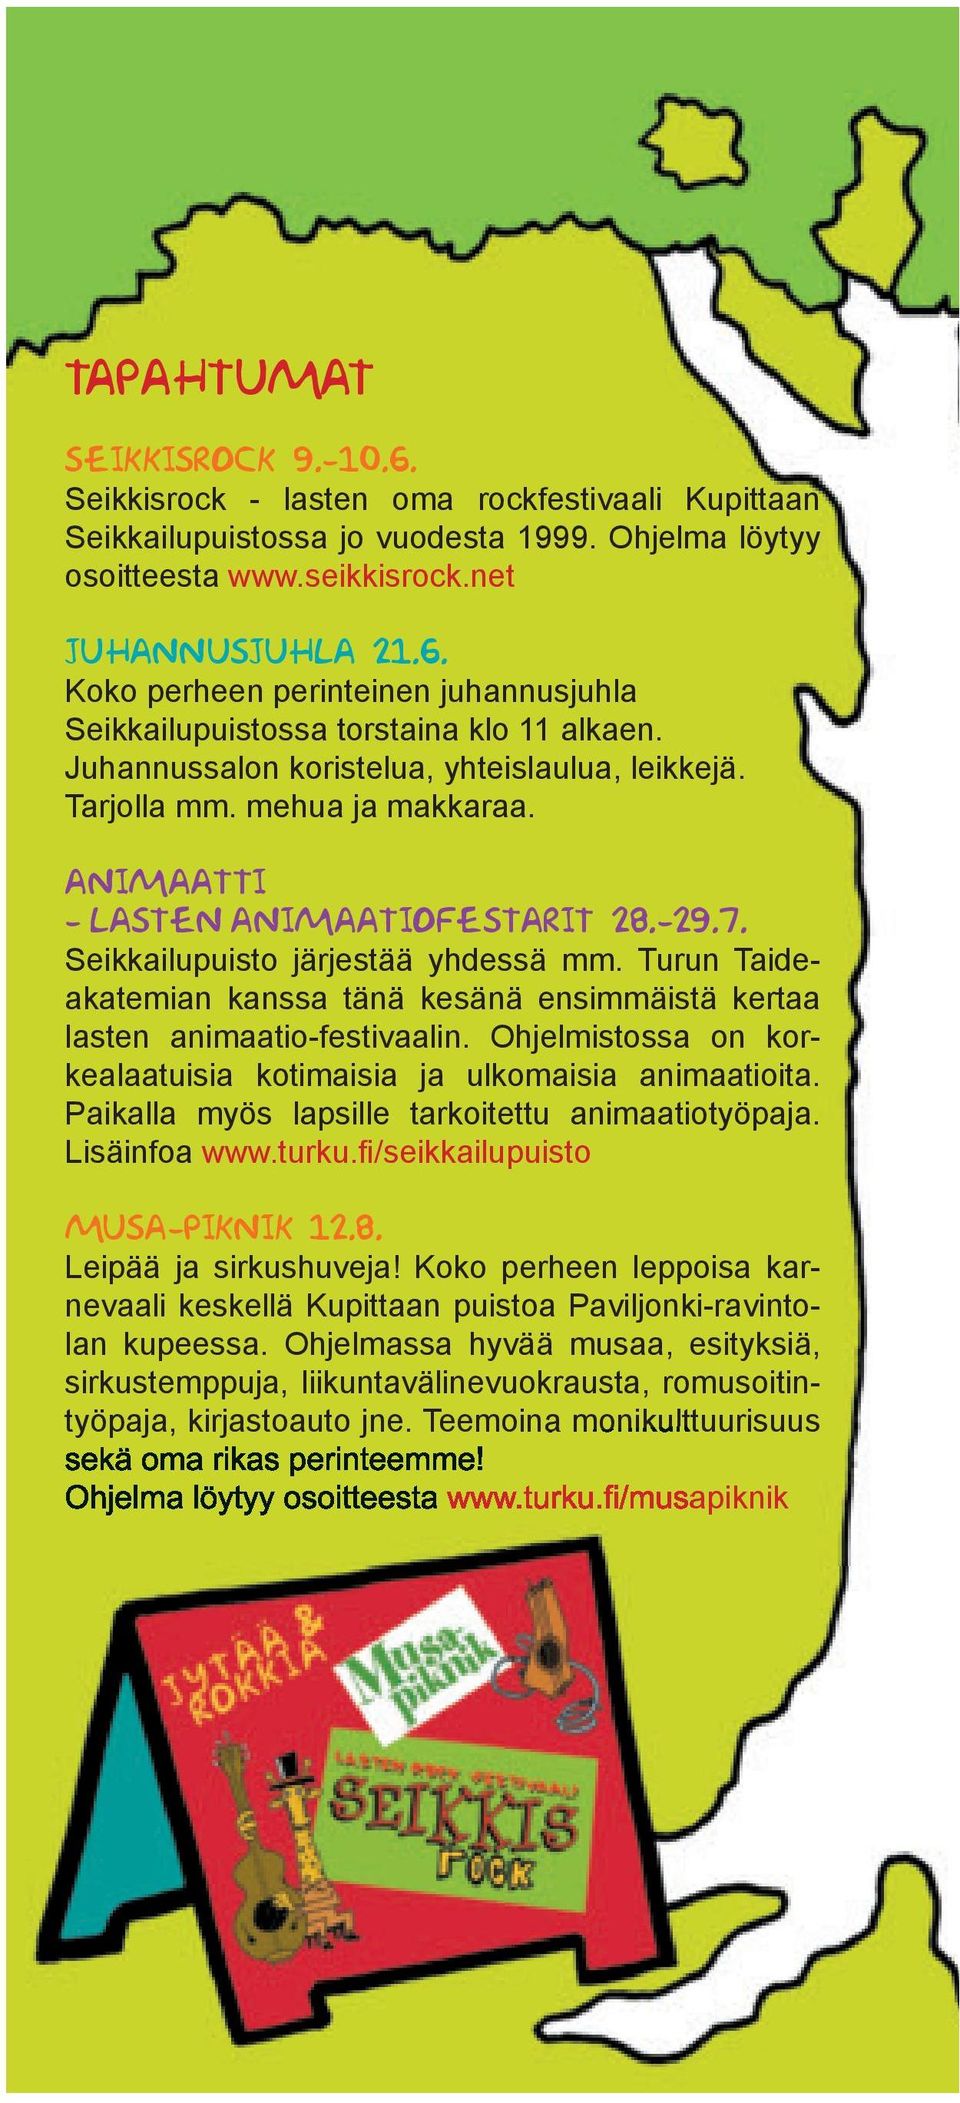 Turun Taideakatemian kanssa tänä kesänä ensimmäistä kertaa lasten animaatio-festivaalin. Ohjelmistossa on korkealaatuisia kotimaisia ja ulkomaisia animaatioita.